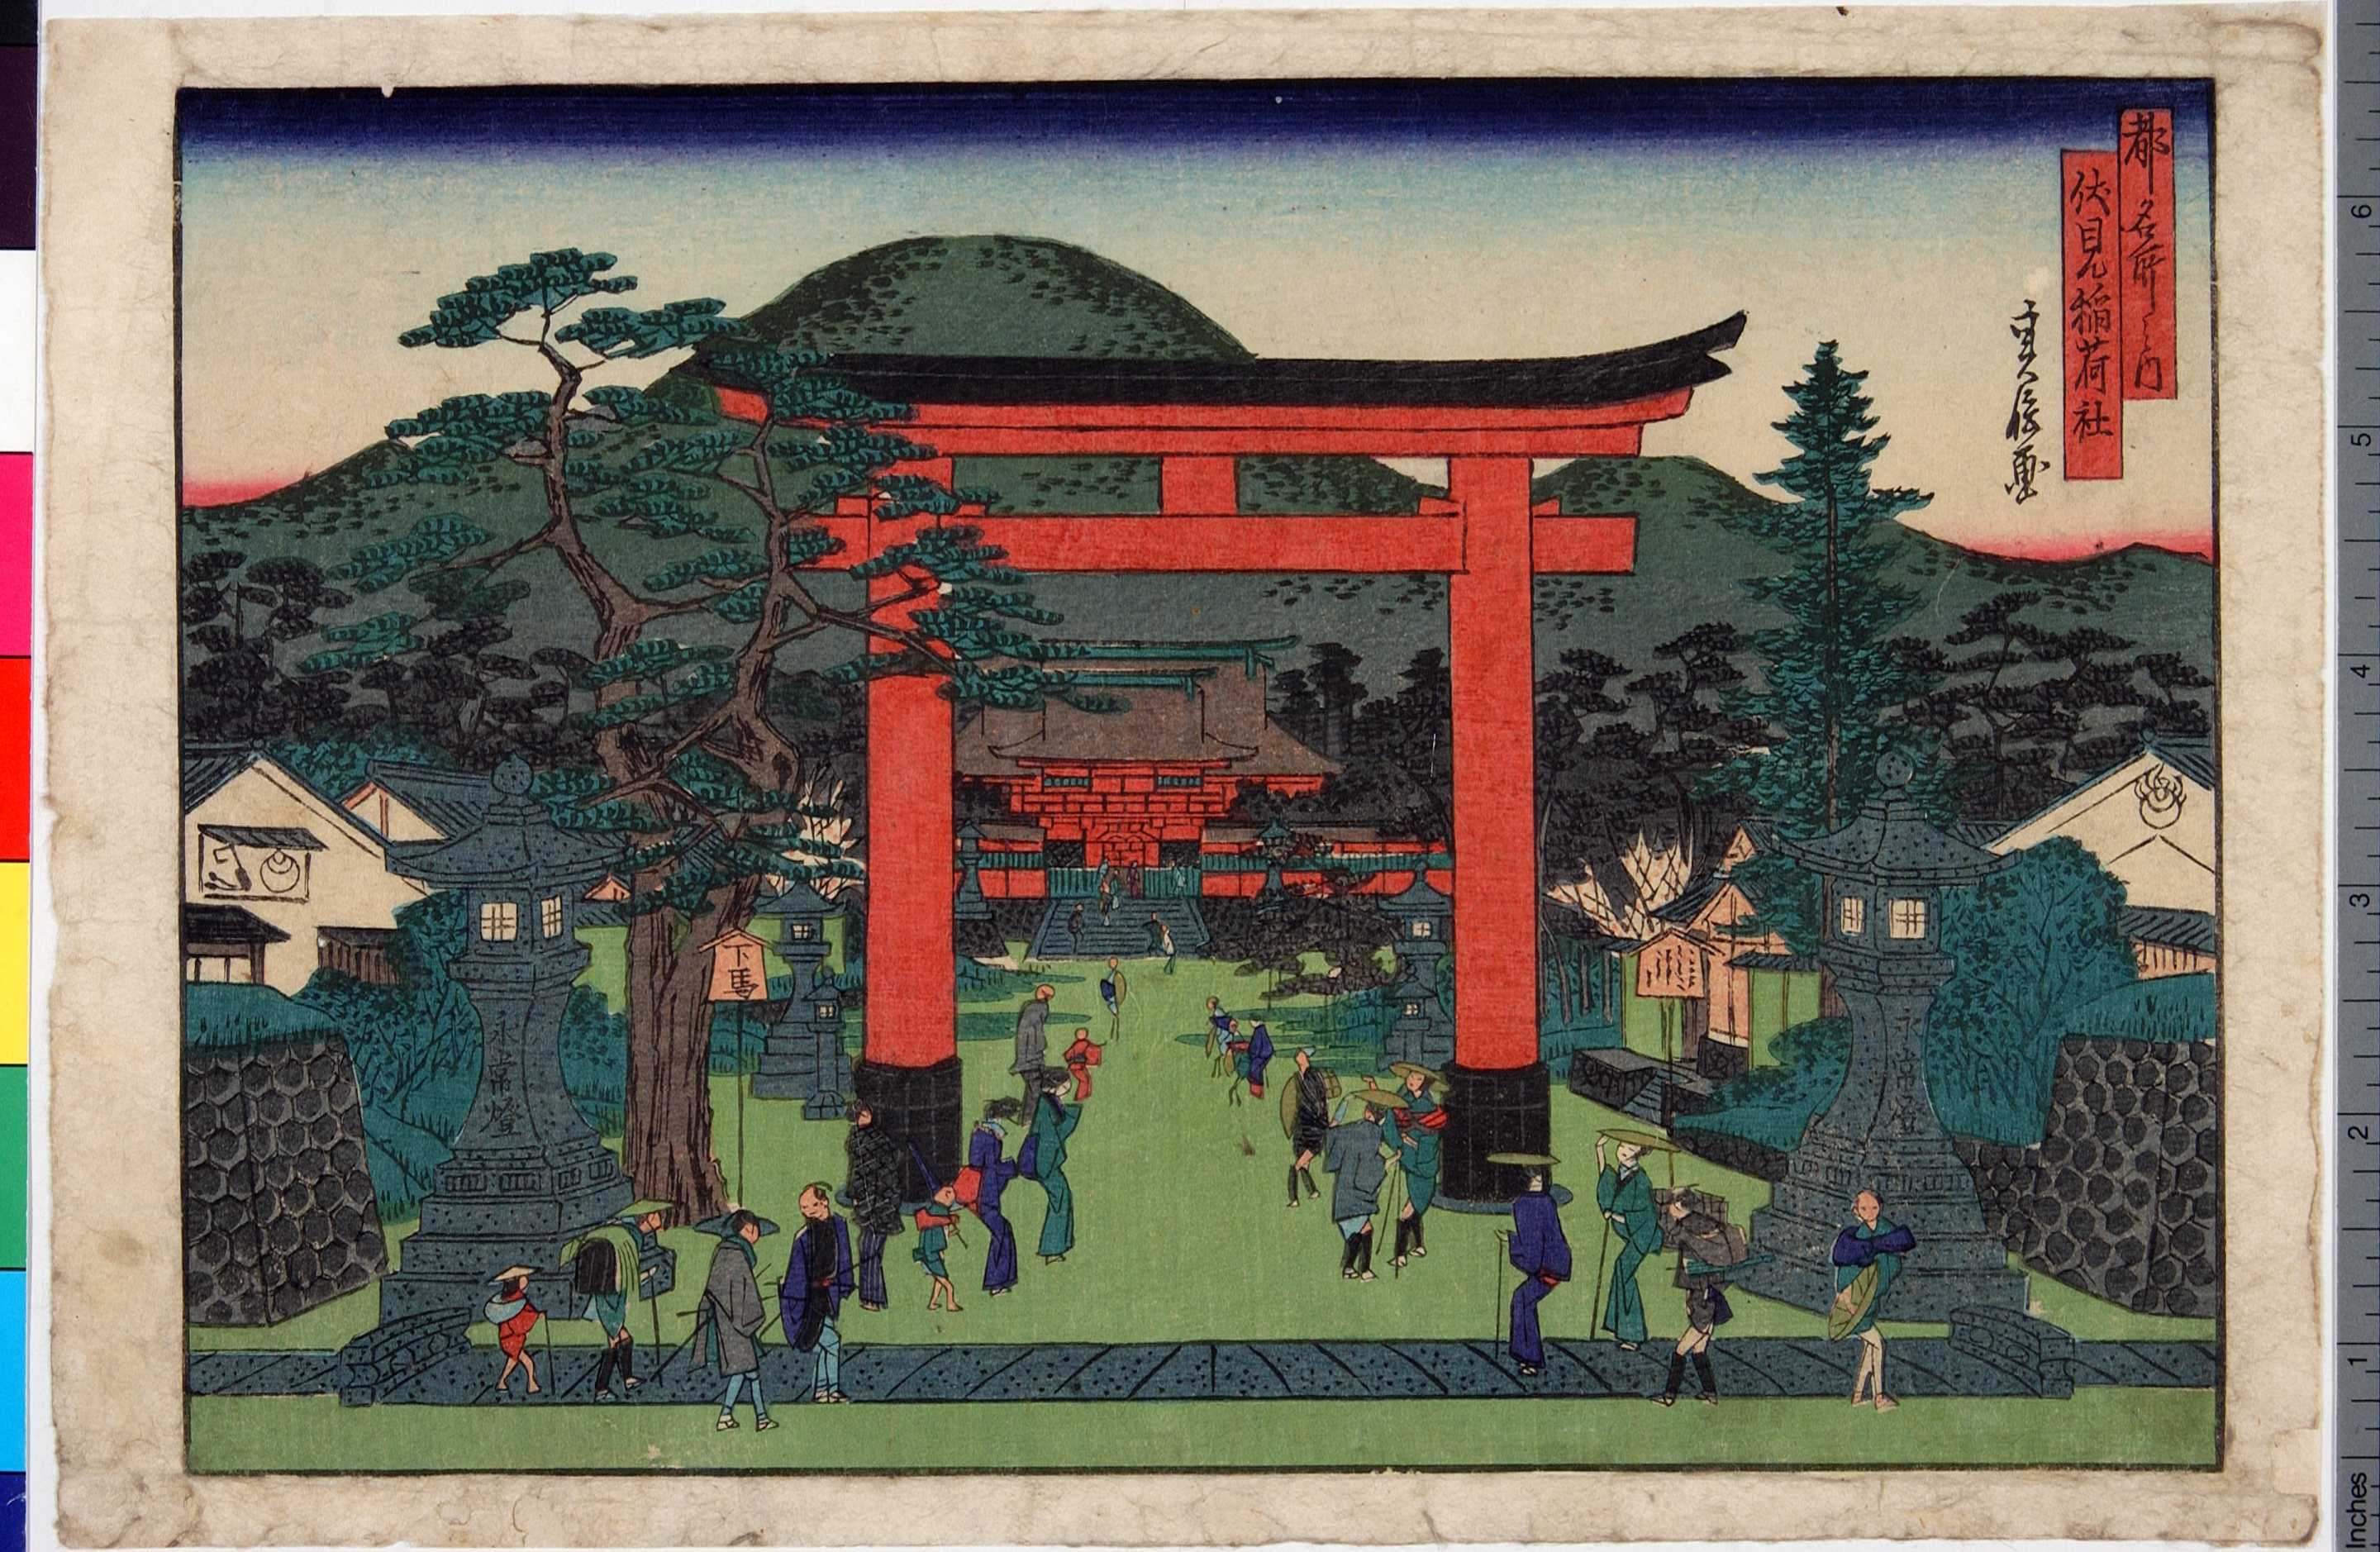 代長谷川貞信: Fushimi Inari Shrine (Fushimi Inari yashiro), from